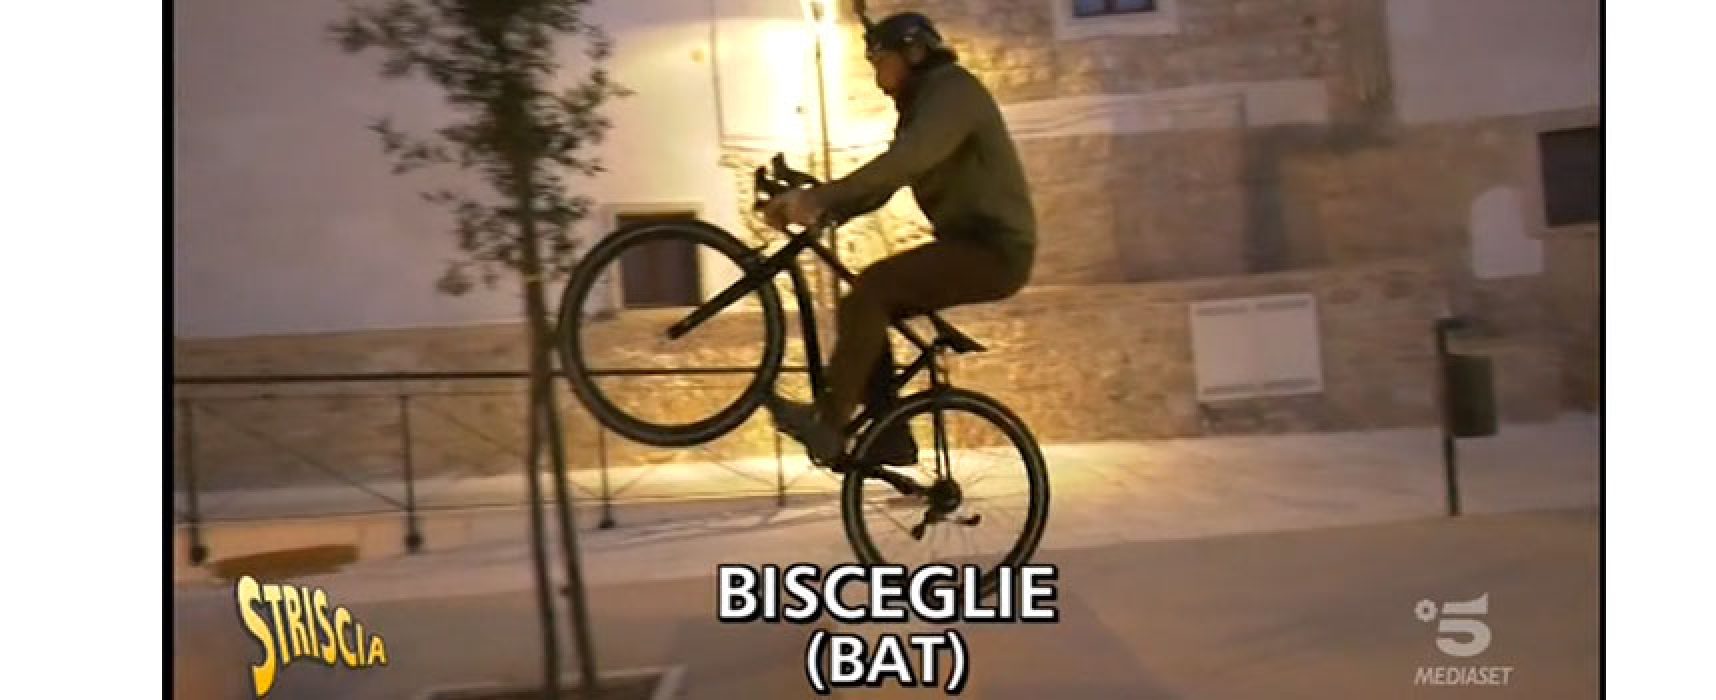 Striscia la Notizia a Bisceglie, Brumotti intercetta spaccio nel centro storico / VIDEO